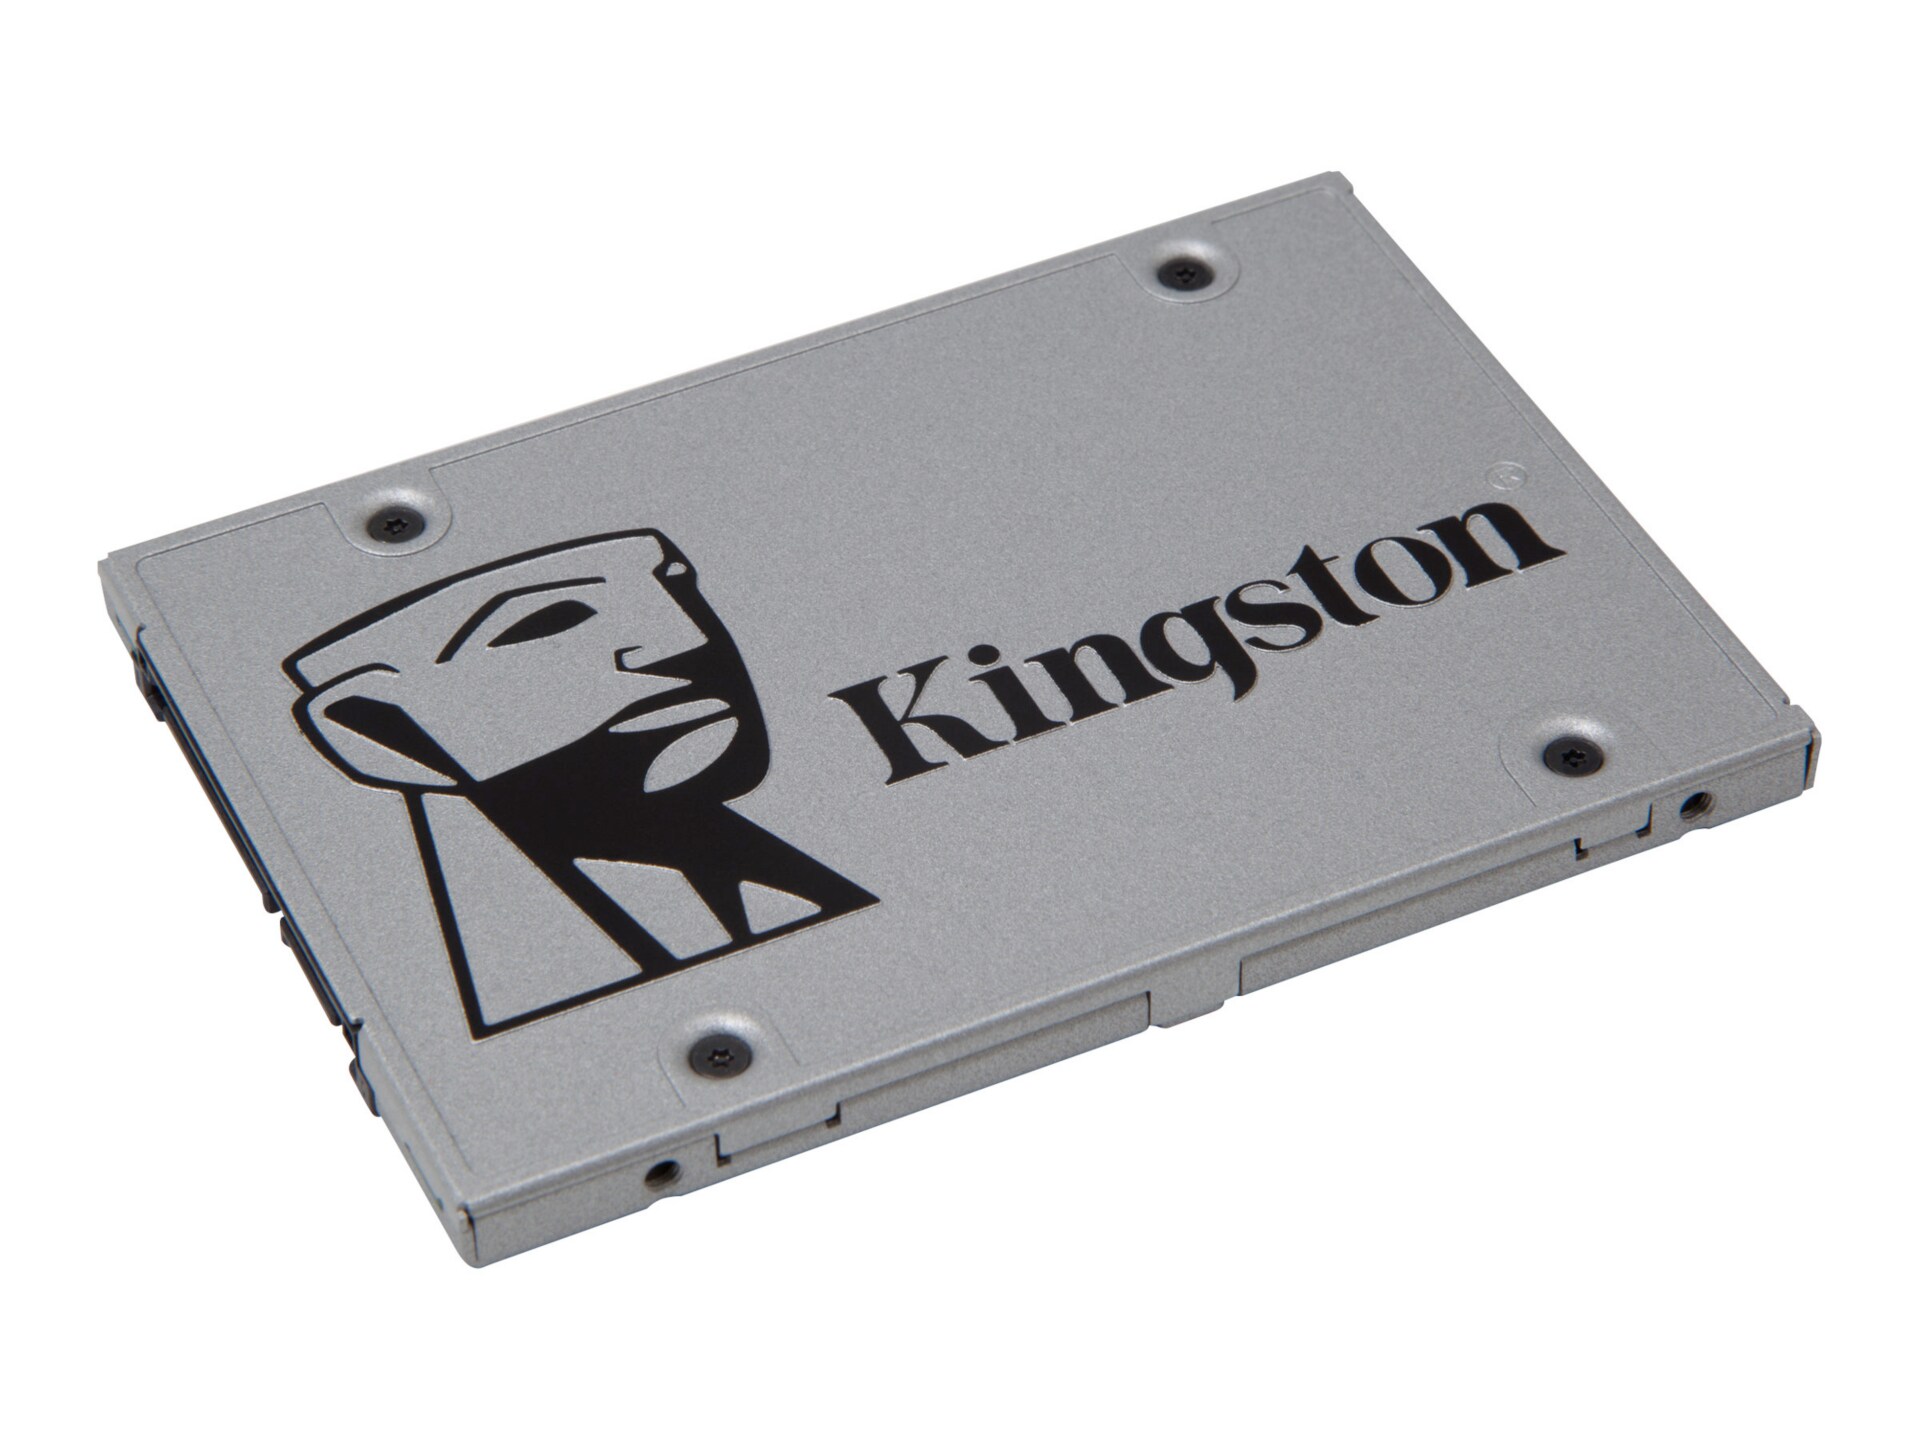 Kingston SSDNow UV400 - solid state drive - 120 GB - SATA 6Gb/s